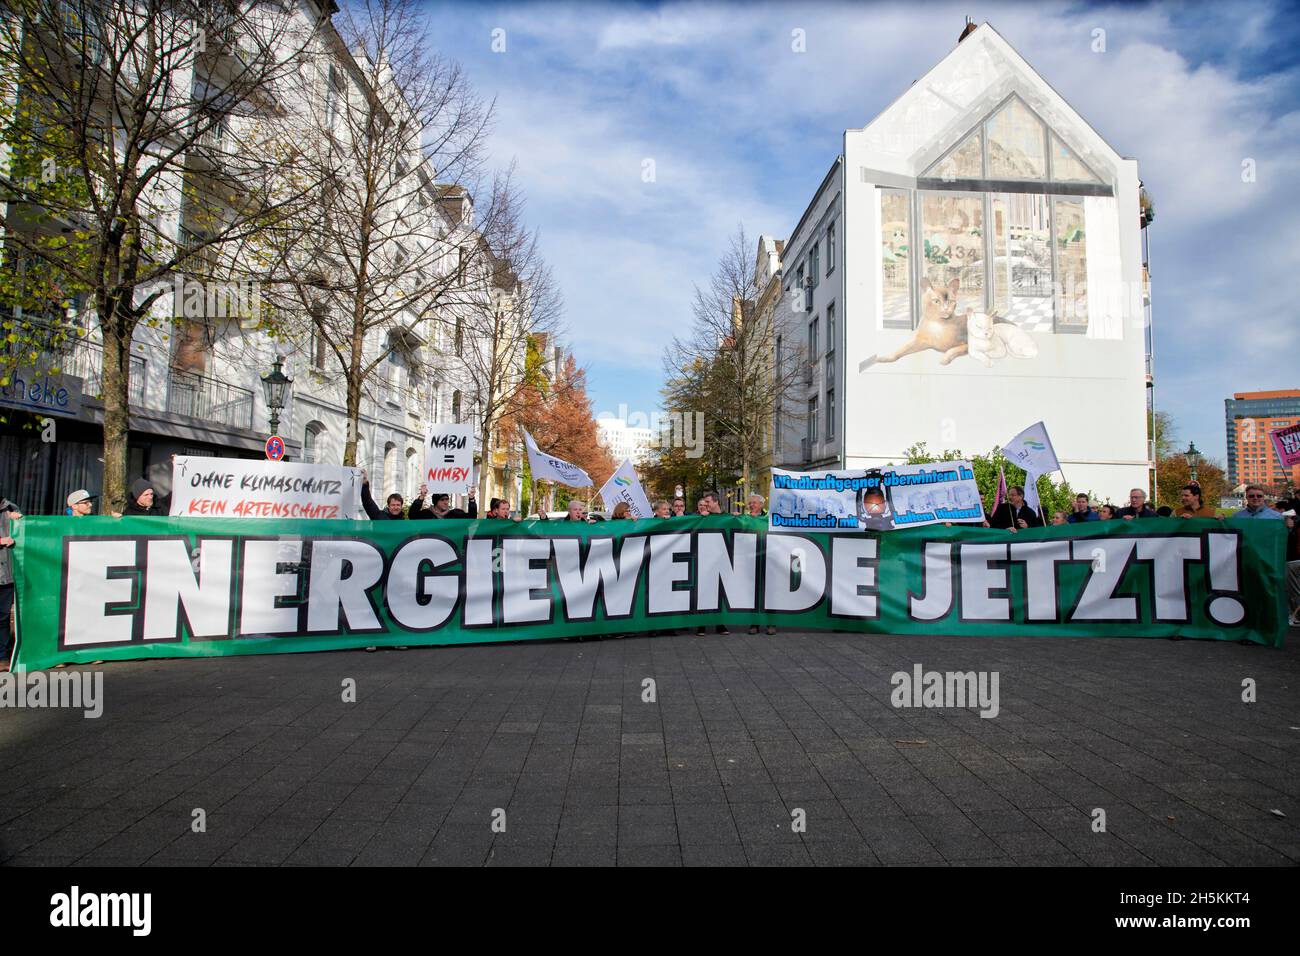 Der Landesverband Erneuerbare Energien NRW demonstriert gegen die, aus ihren Augen, Klagewelle gegen Windkraftalagen des NABU-NRW. Foto Stock